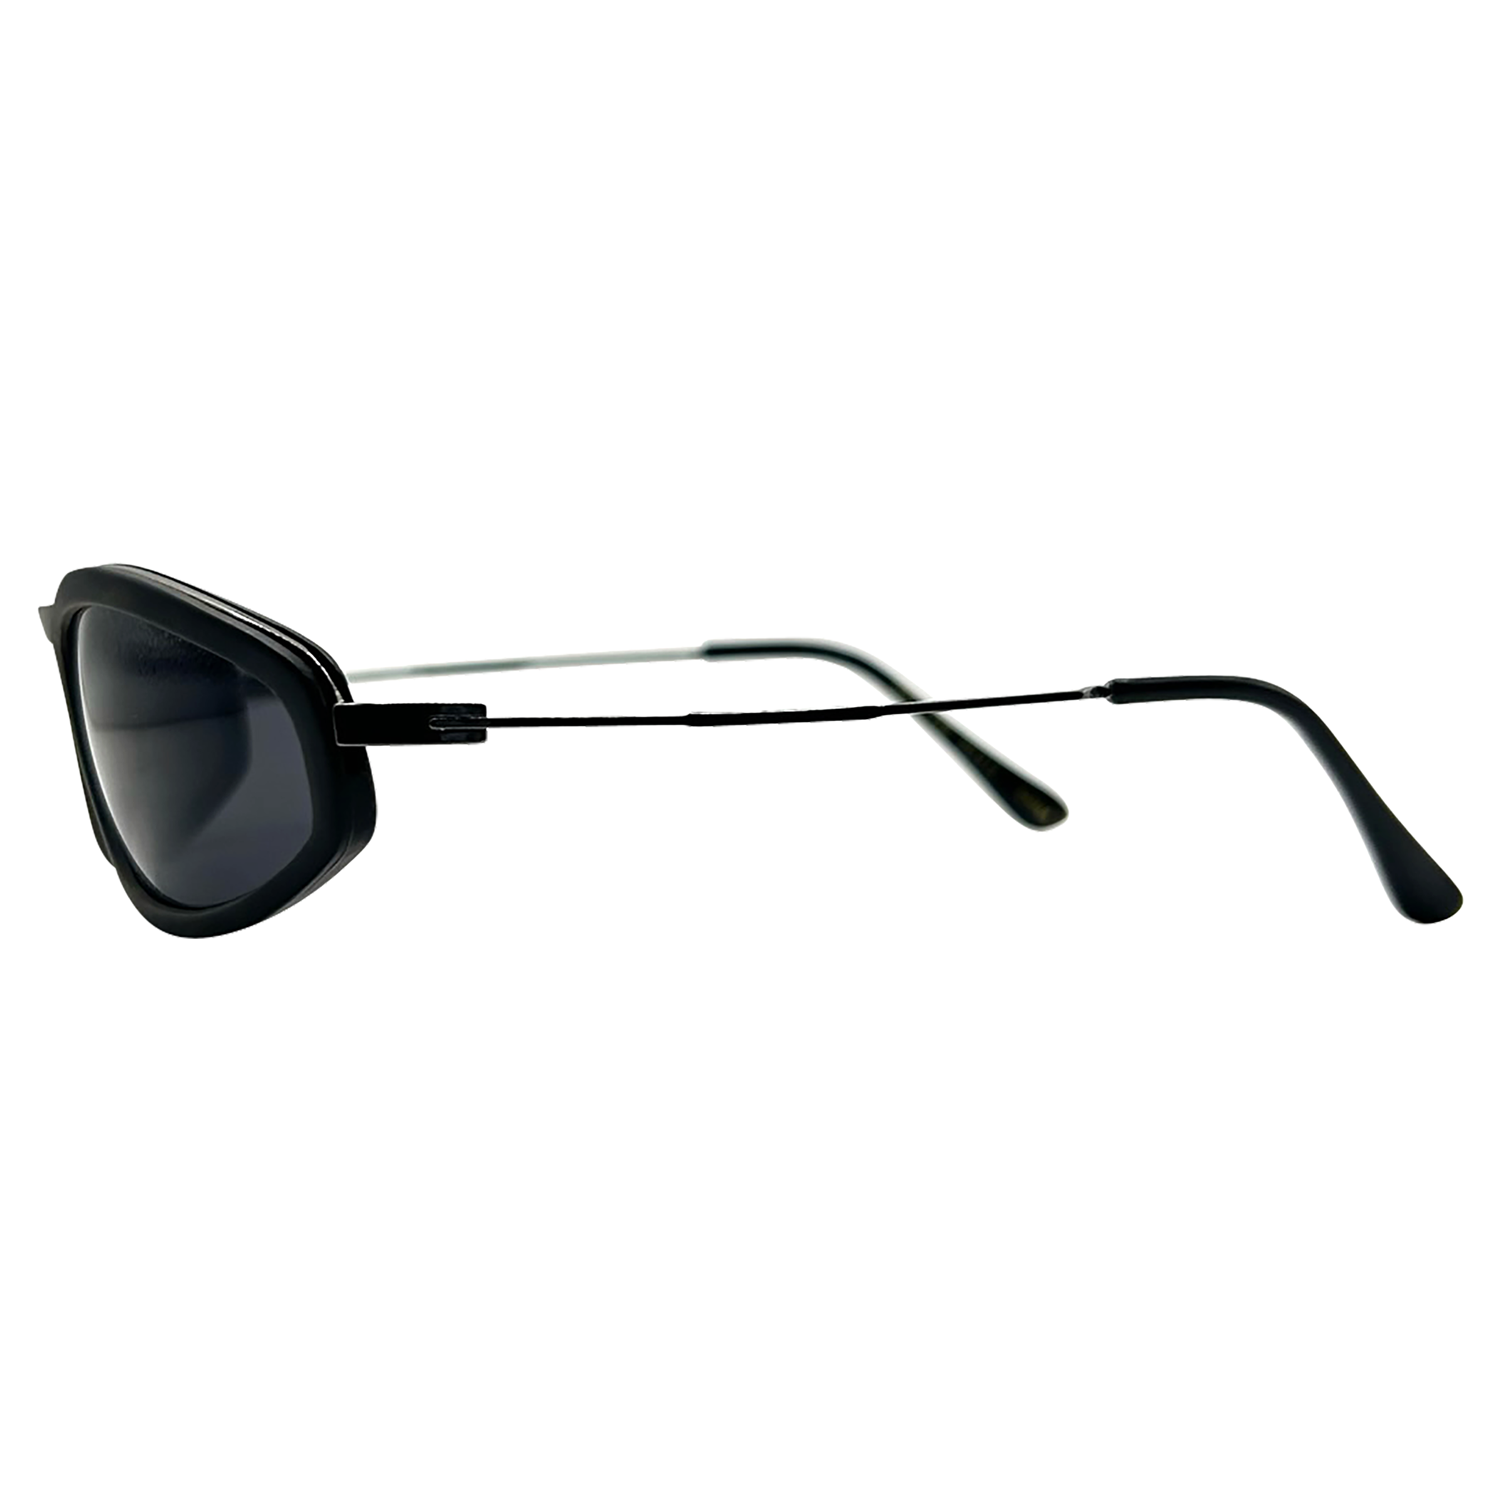 NEO Round Sunglasses